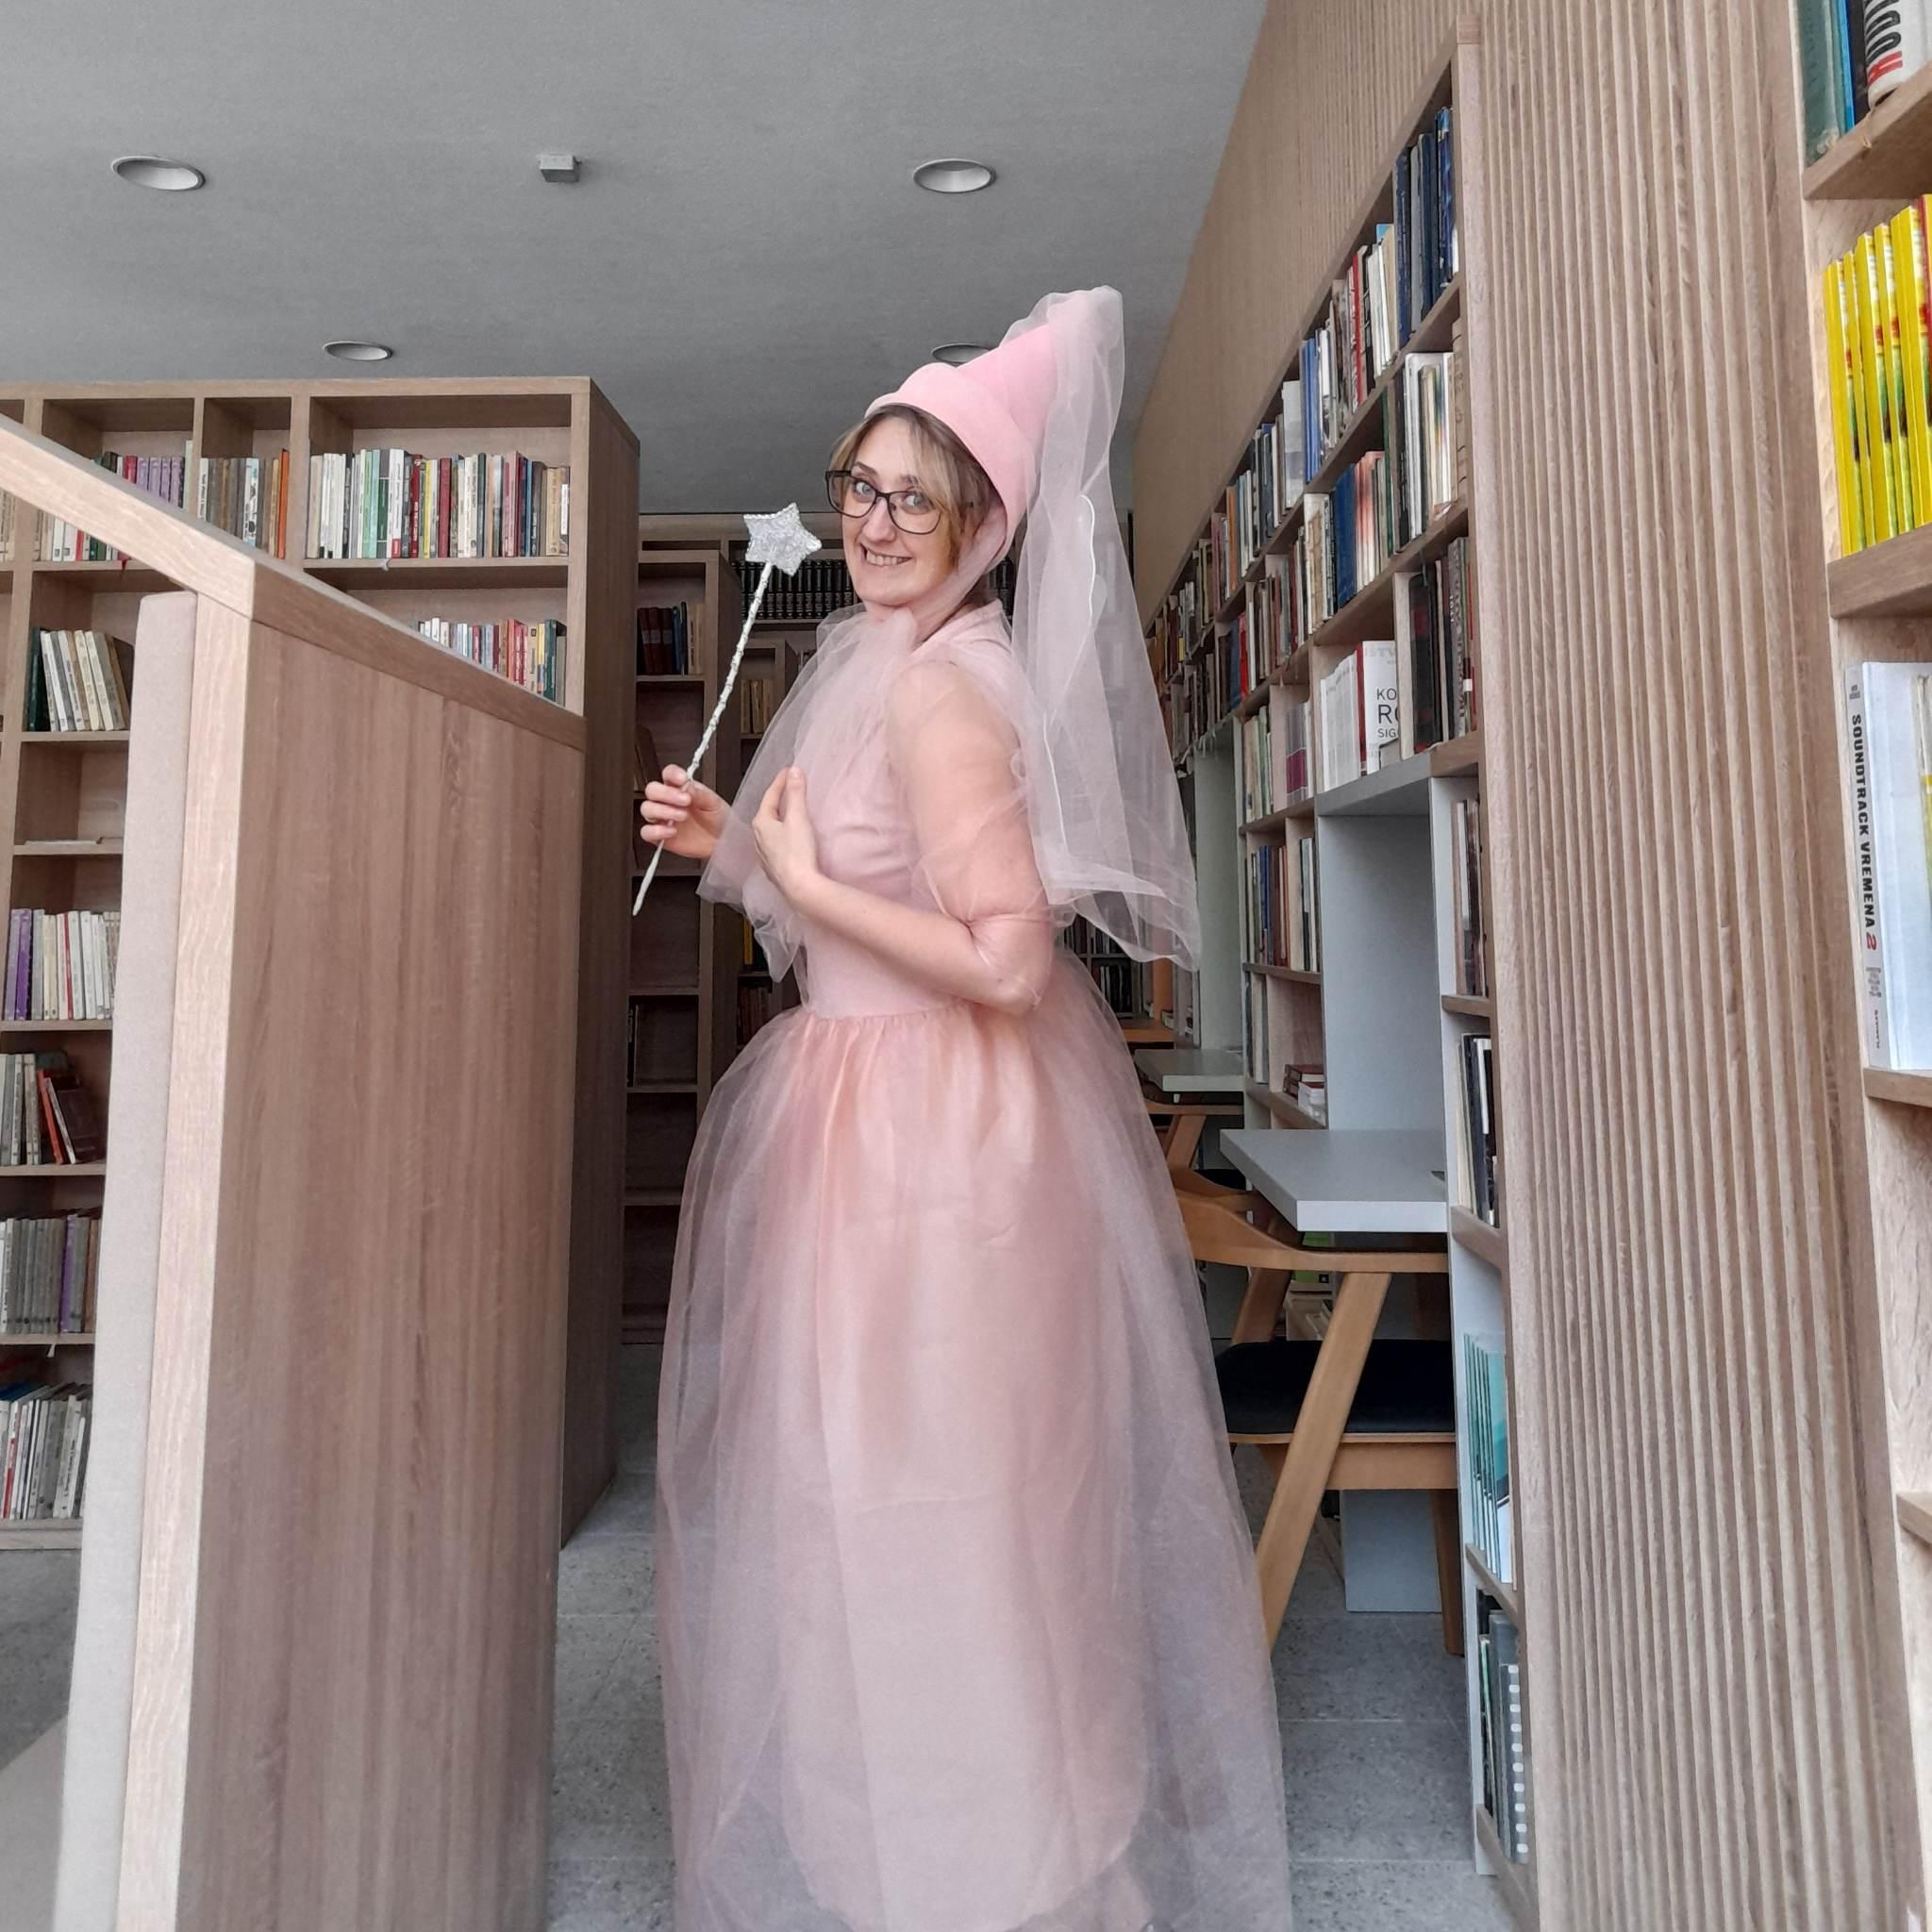 Bibliotekarka u kostimu vile djeci vraća ljubav prema knjigama